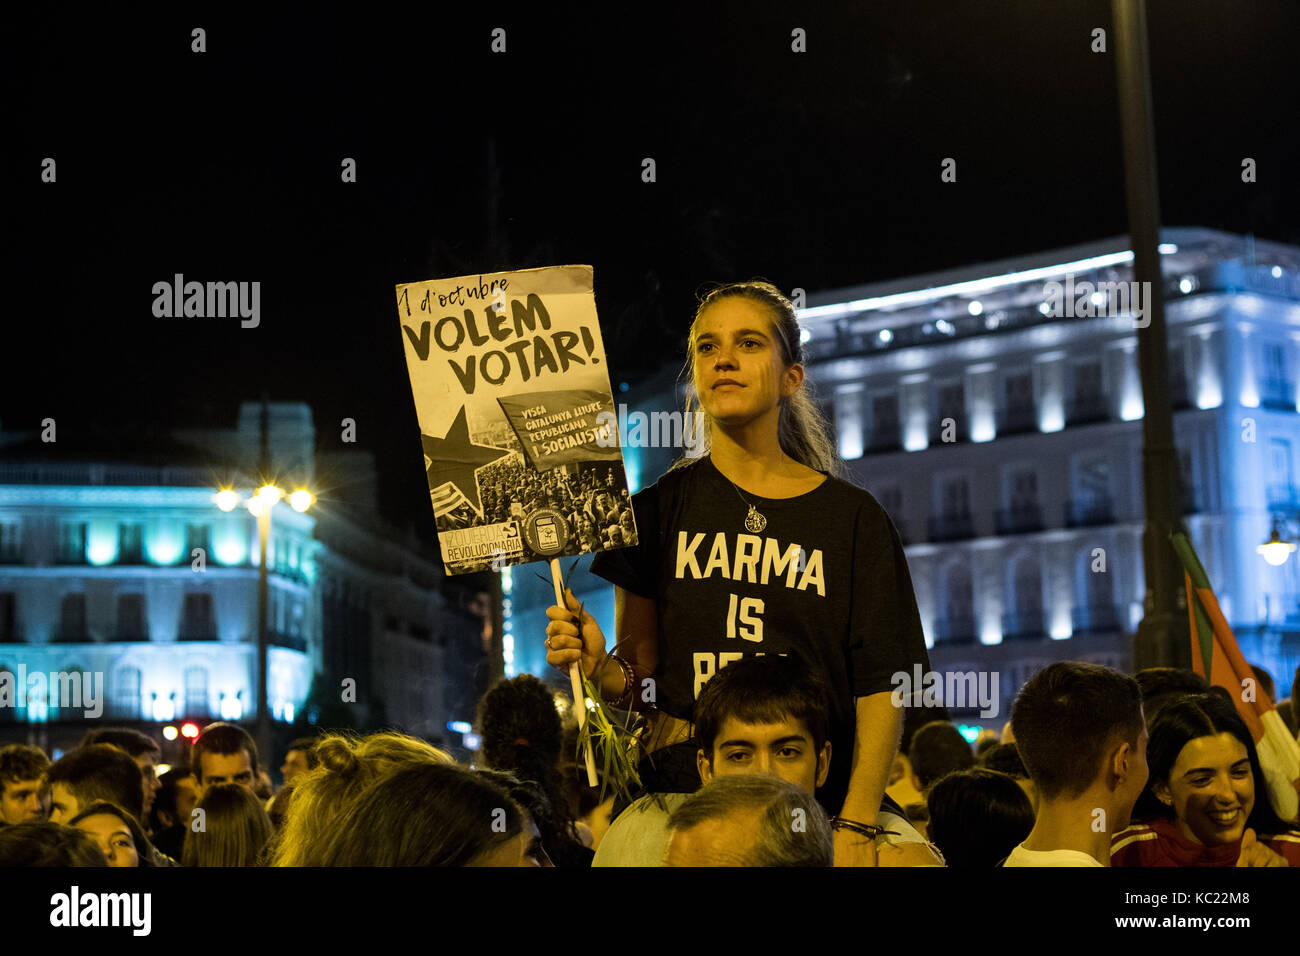 Madrid, España. 1 de octubre de 2017. Una mujer sostiene un cartel que dice "queremos votar" durante una protesta que apoya el referéndum en Cataluña. Madrid, España. Crédito: Marcos del Mazo/Alamy Live News Foto de stock